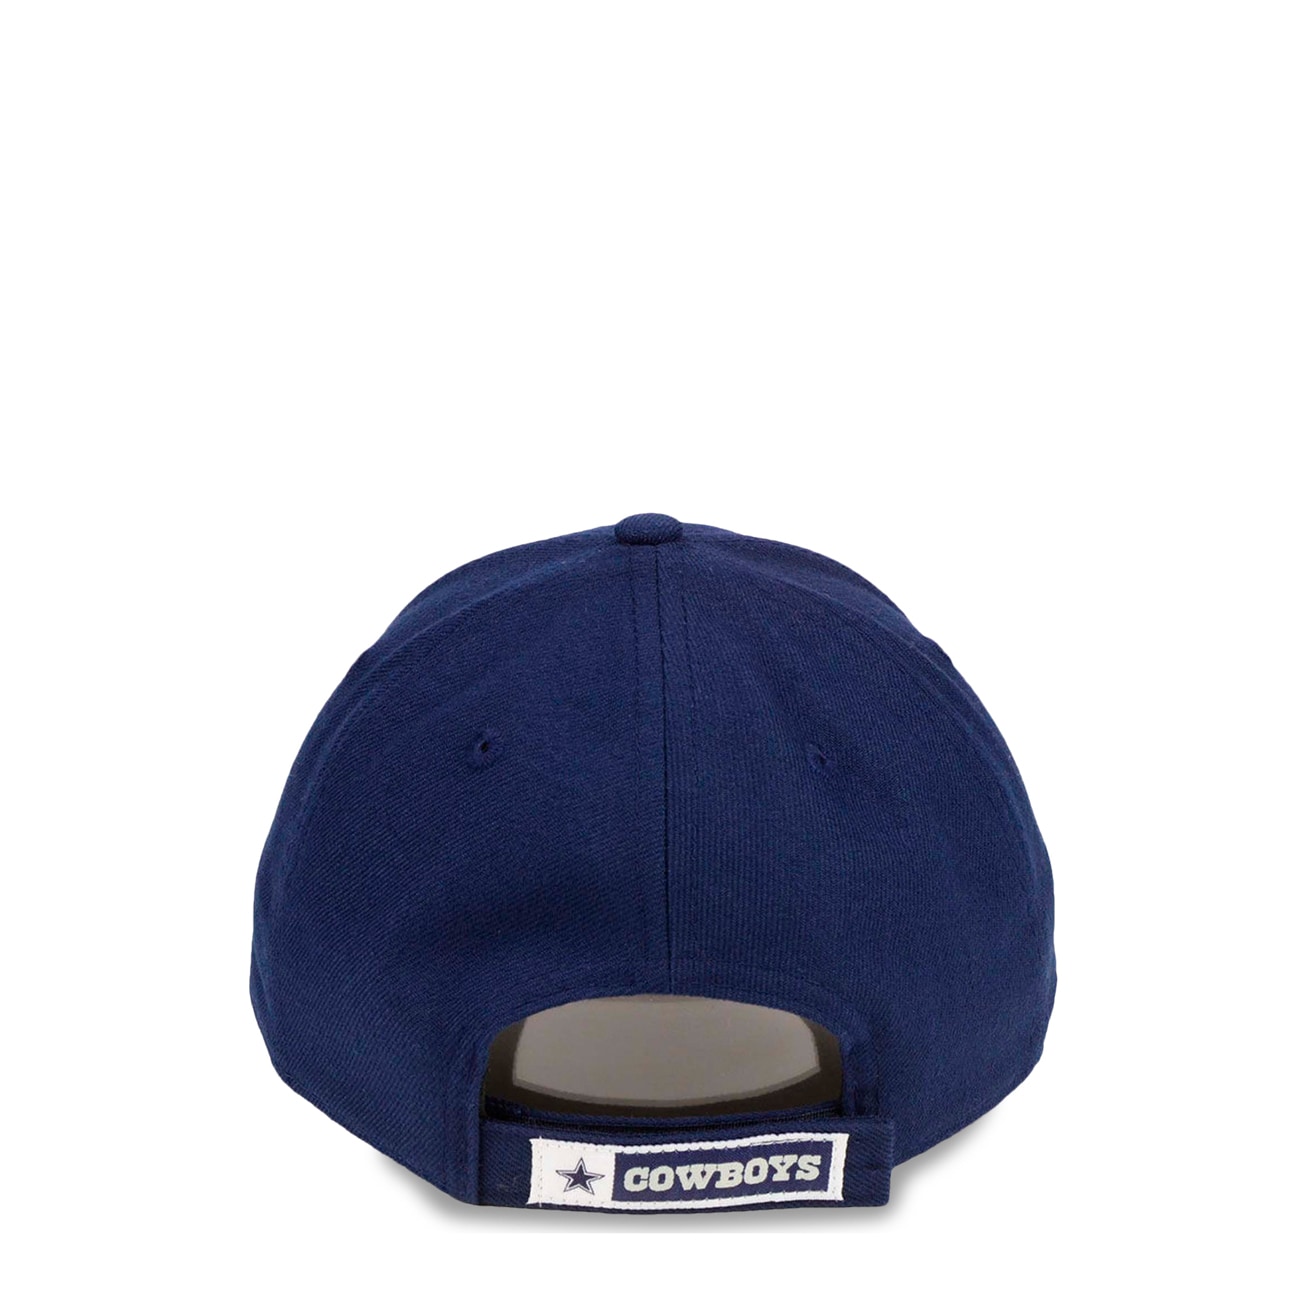 Dallas Cowboys adjustable cap